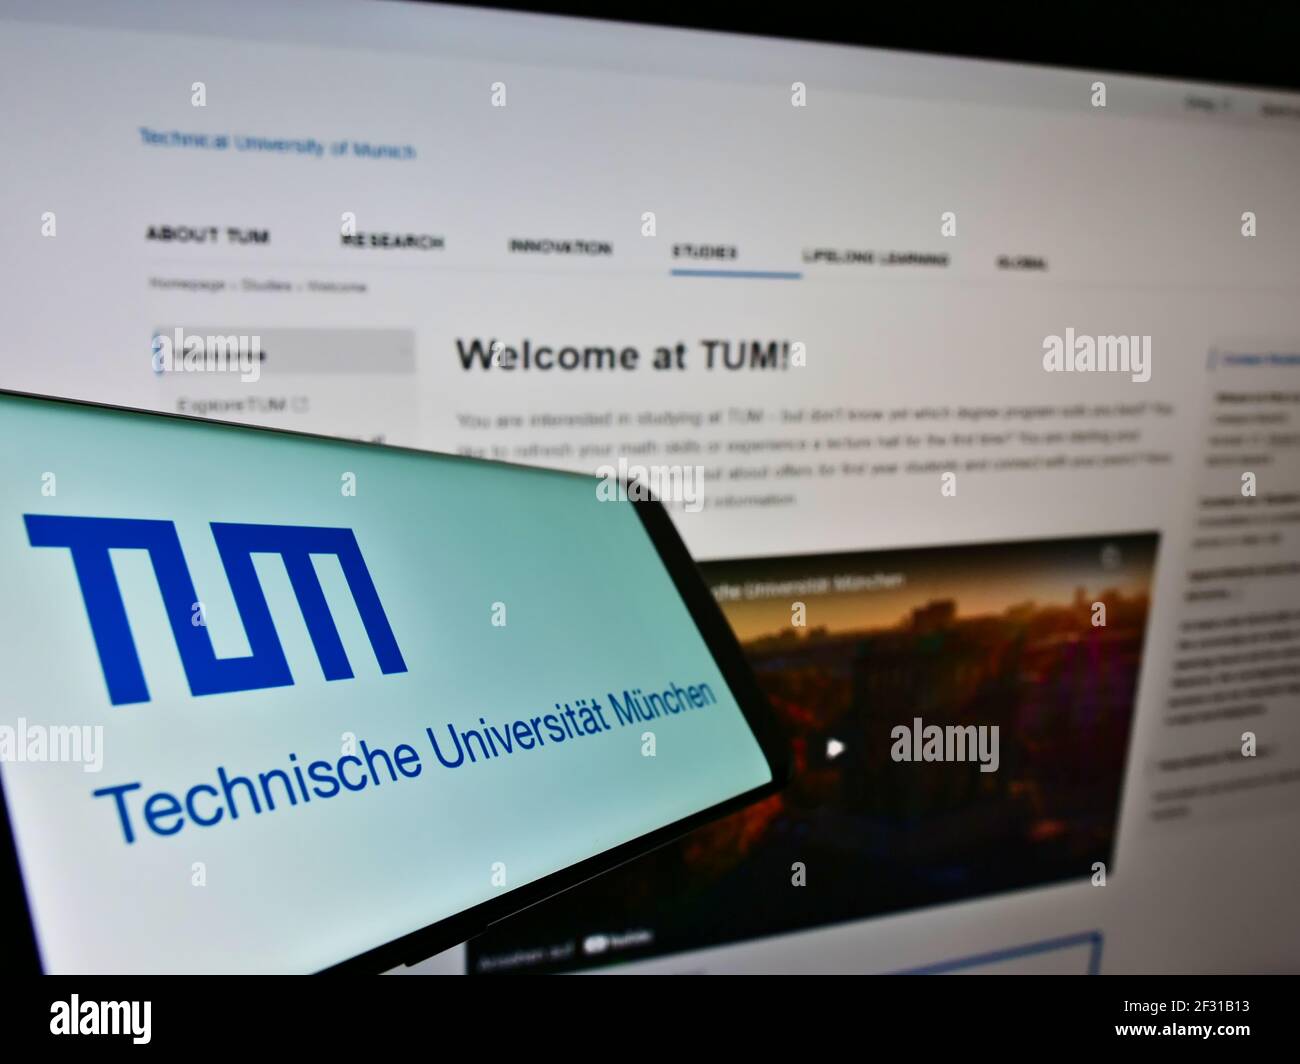 Teléfono móvil con el logotipo de la institución educativa alemana Technische Universität München en la pantalla frente a la página web. Enfoque en el centro de la pantalla del teléfono. Foto de stock